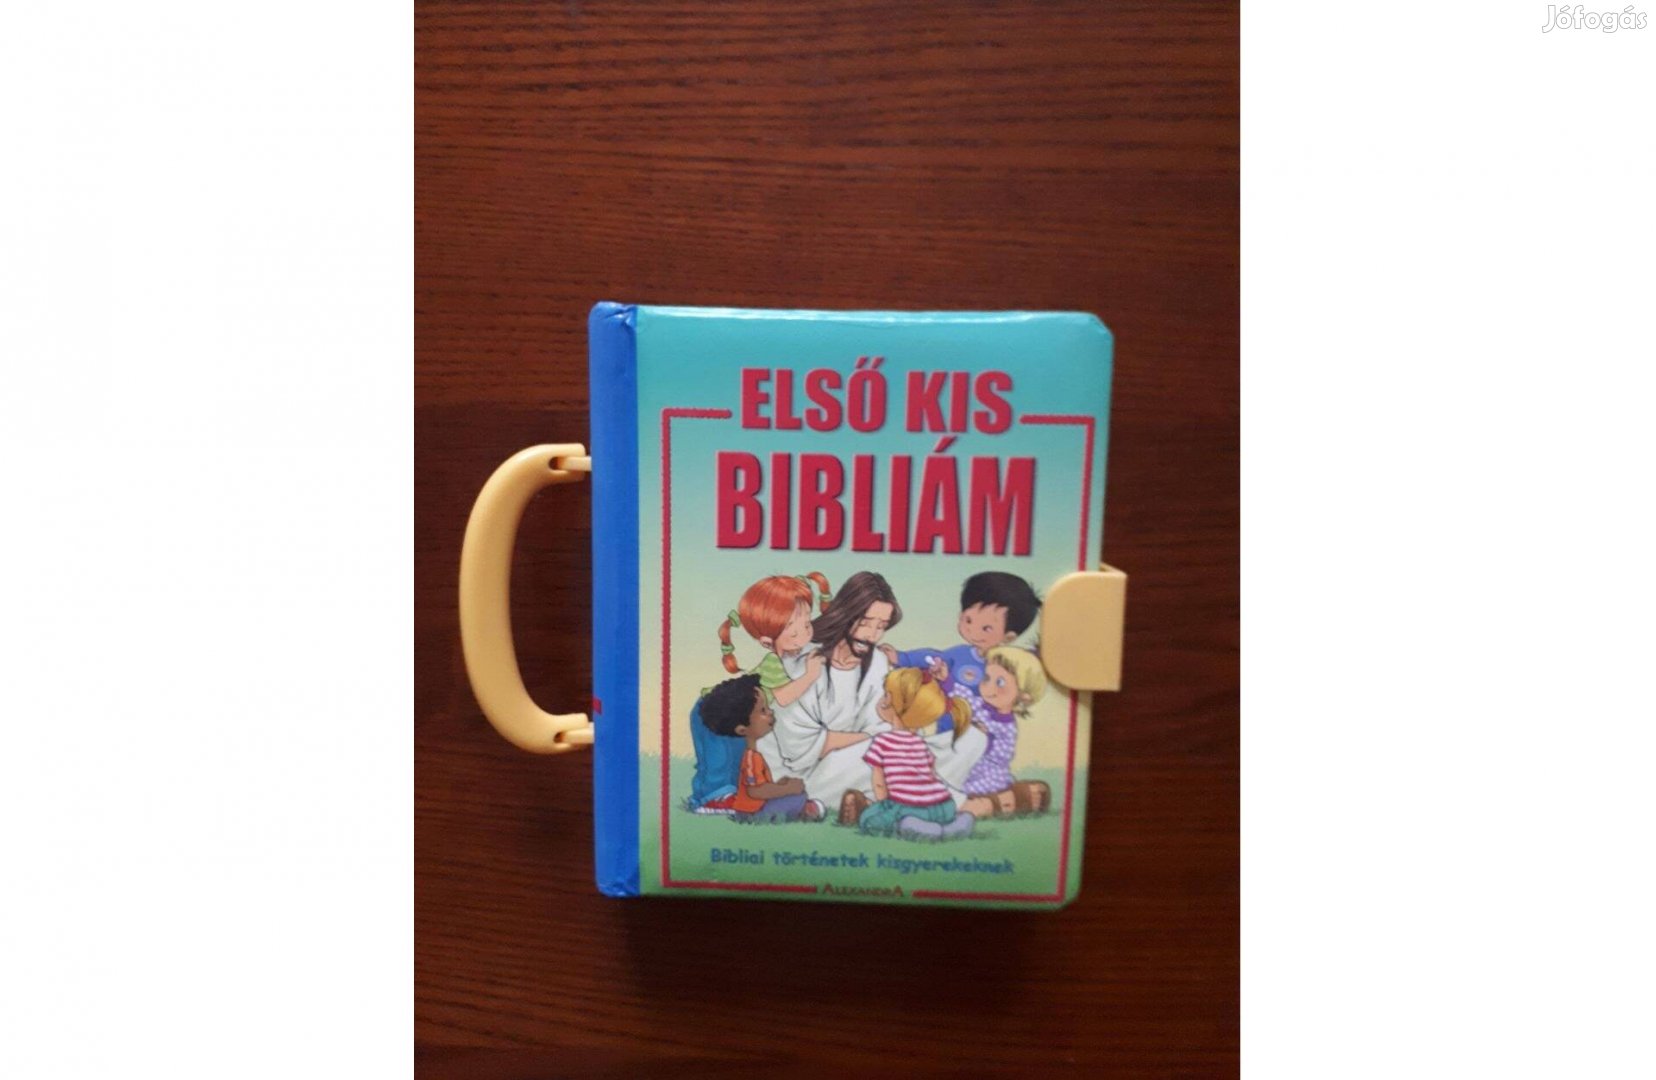 Első kis Bibliám - Bibliai történetek kisgyerekeknek, alig használt